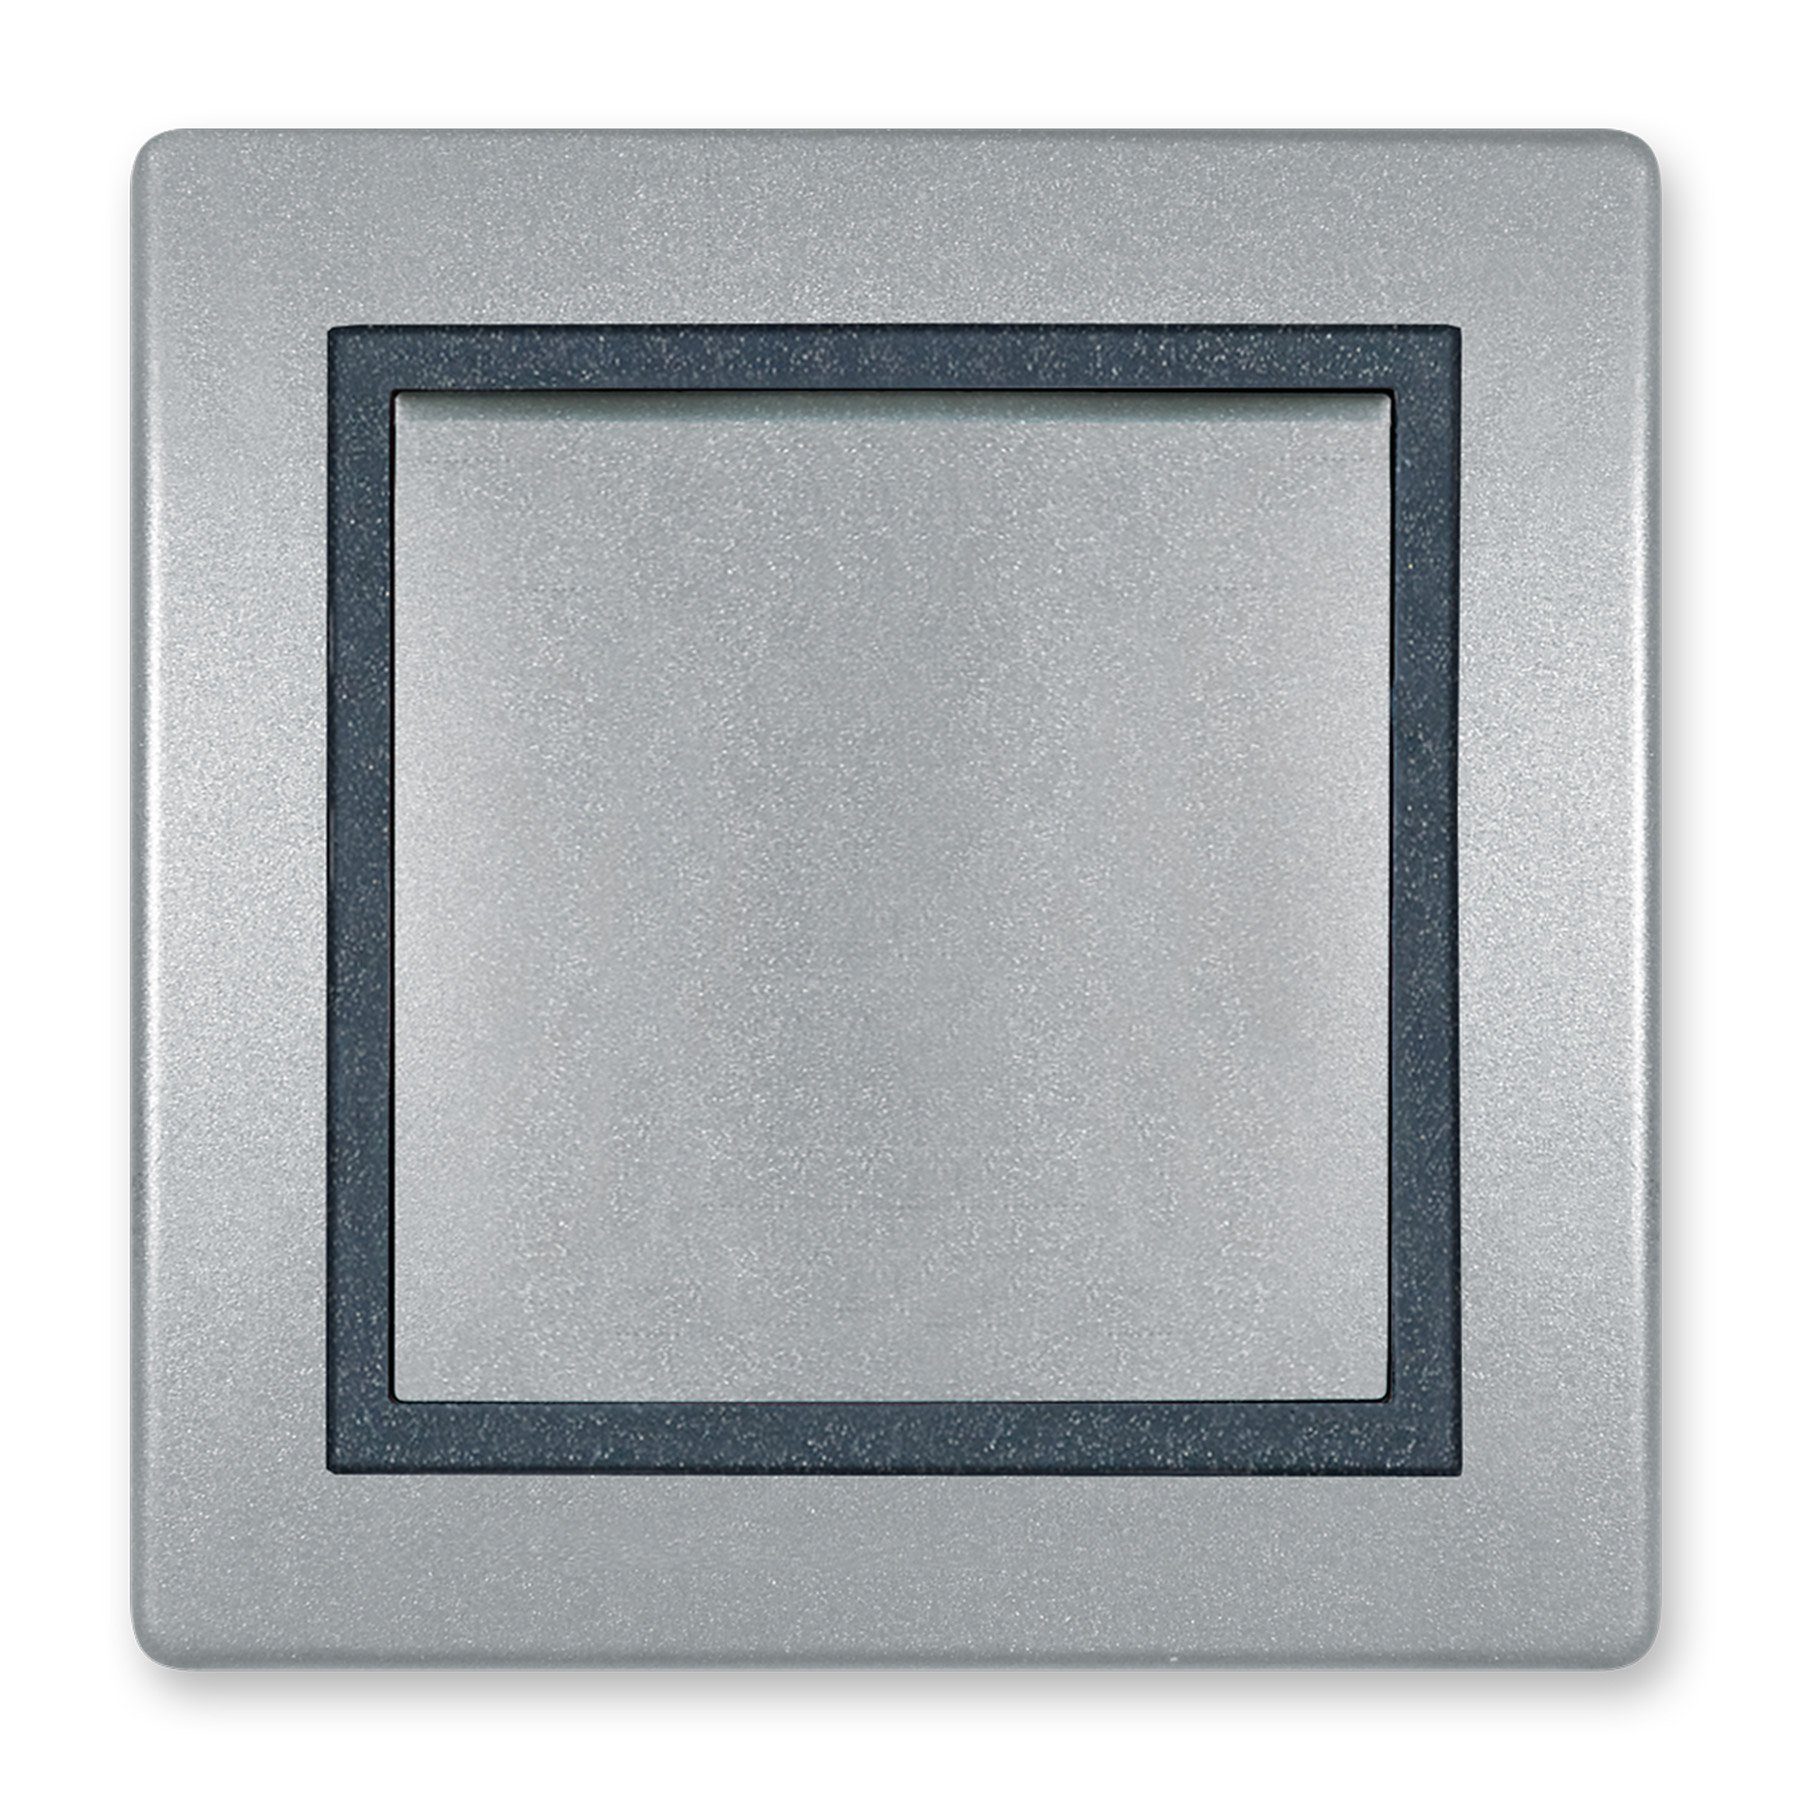 Line Lichtschalter Aling Ein/Aus Silber, VDE-zertifiziert Schalter Conel Prestige